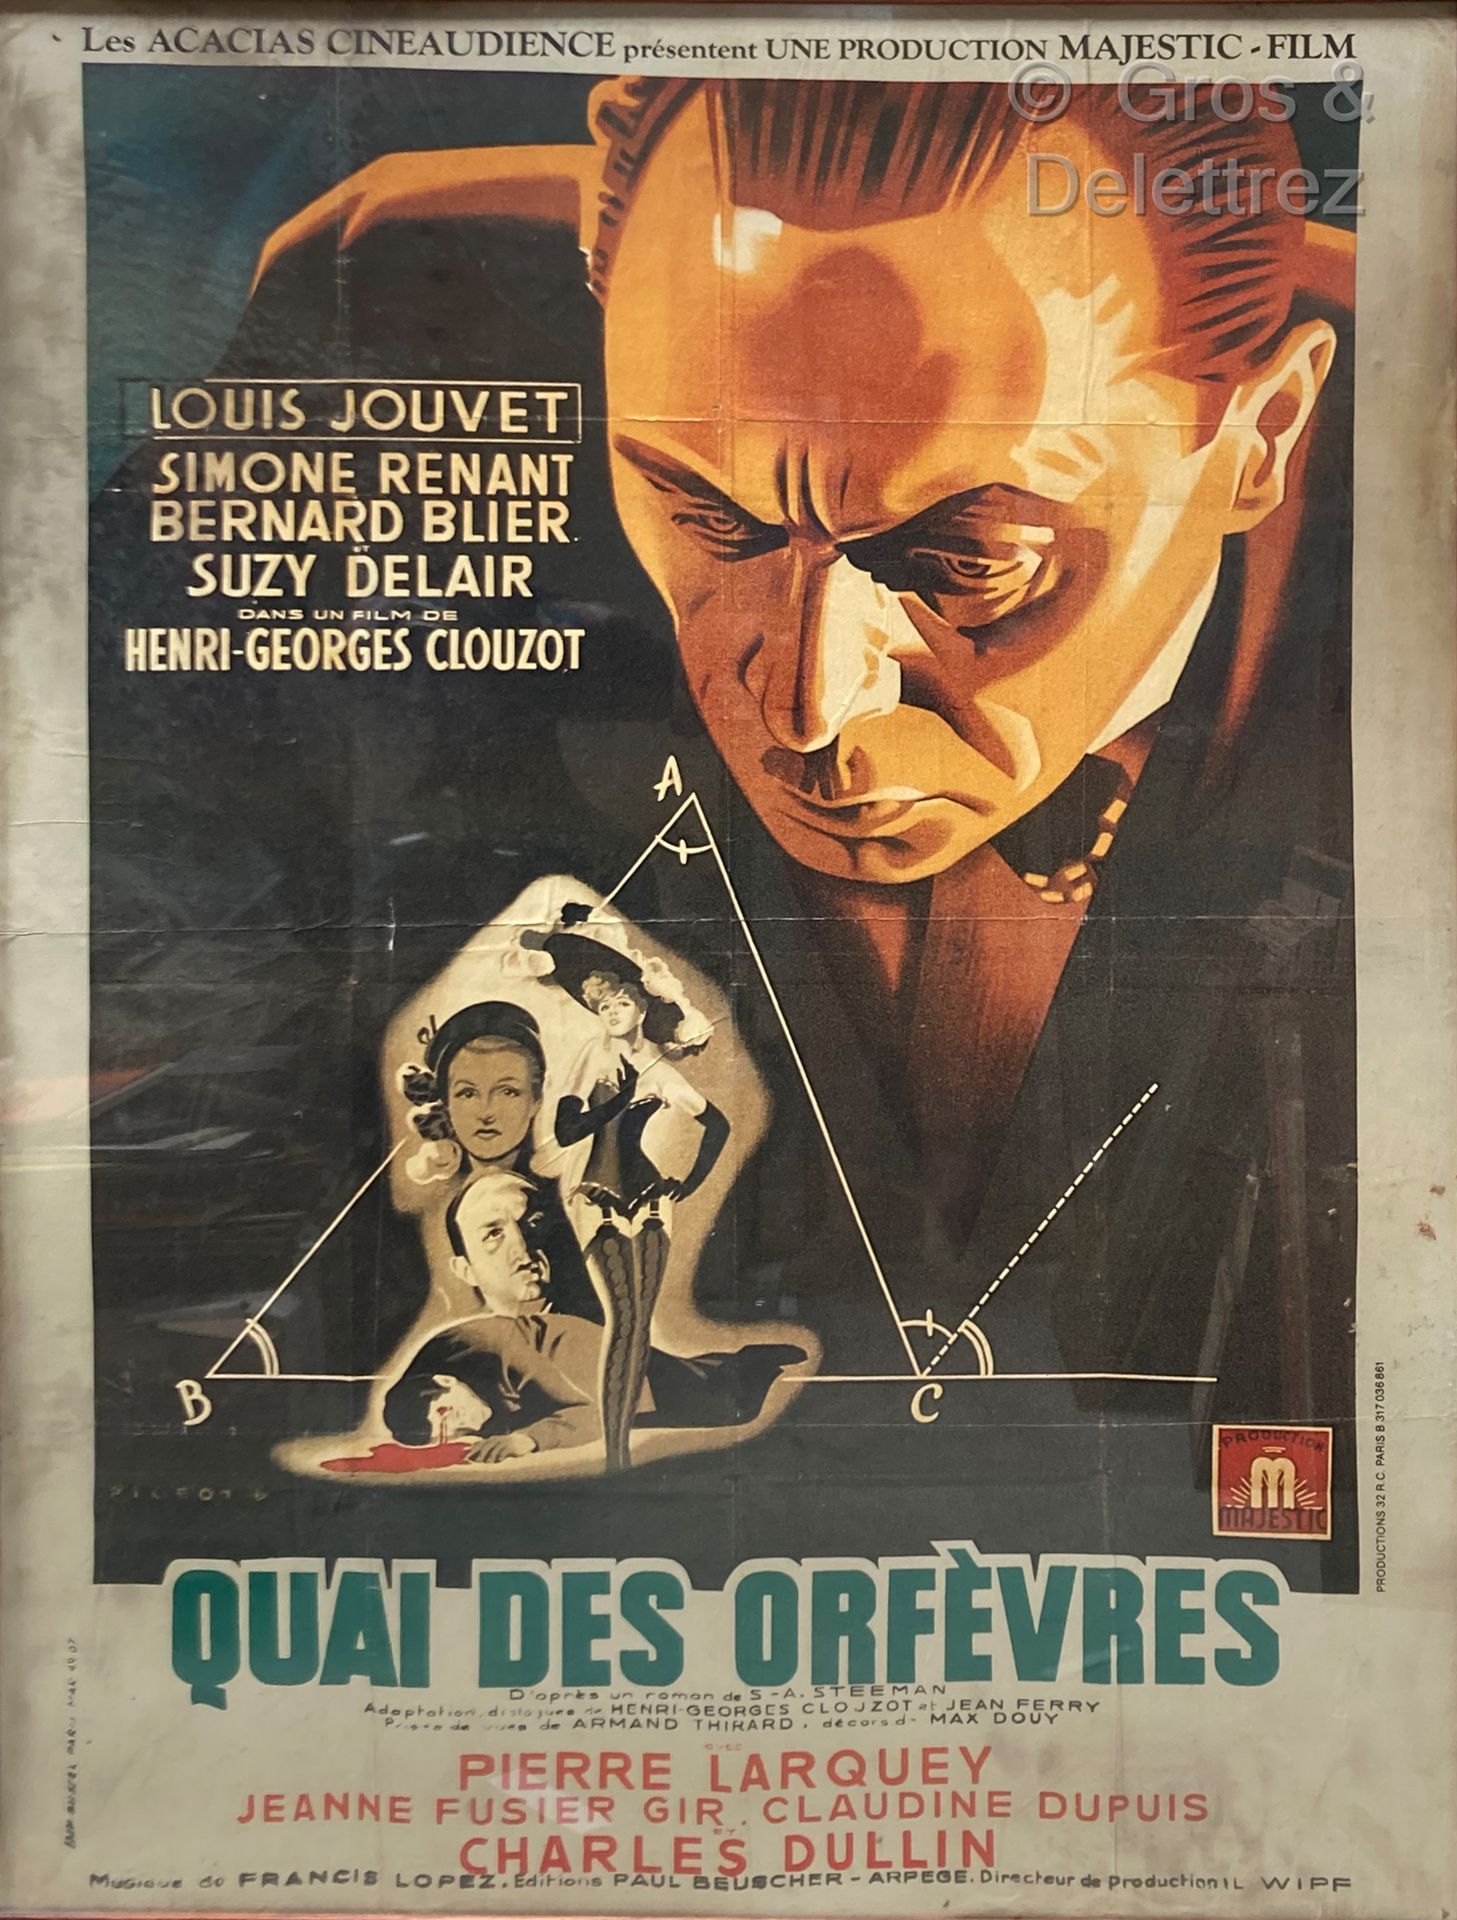 HENRI-GEORGES CLOUZOT QUAI DES ORFEVRES

Affiche de cinéma

158 x 117 cm (petite&hellip;